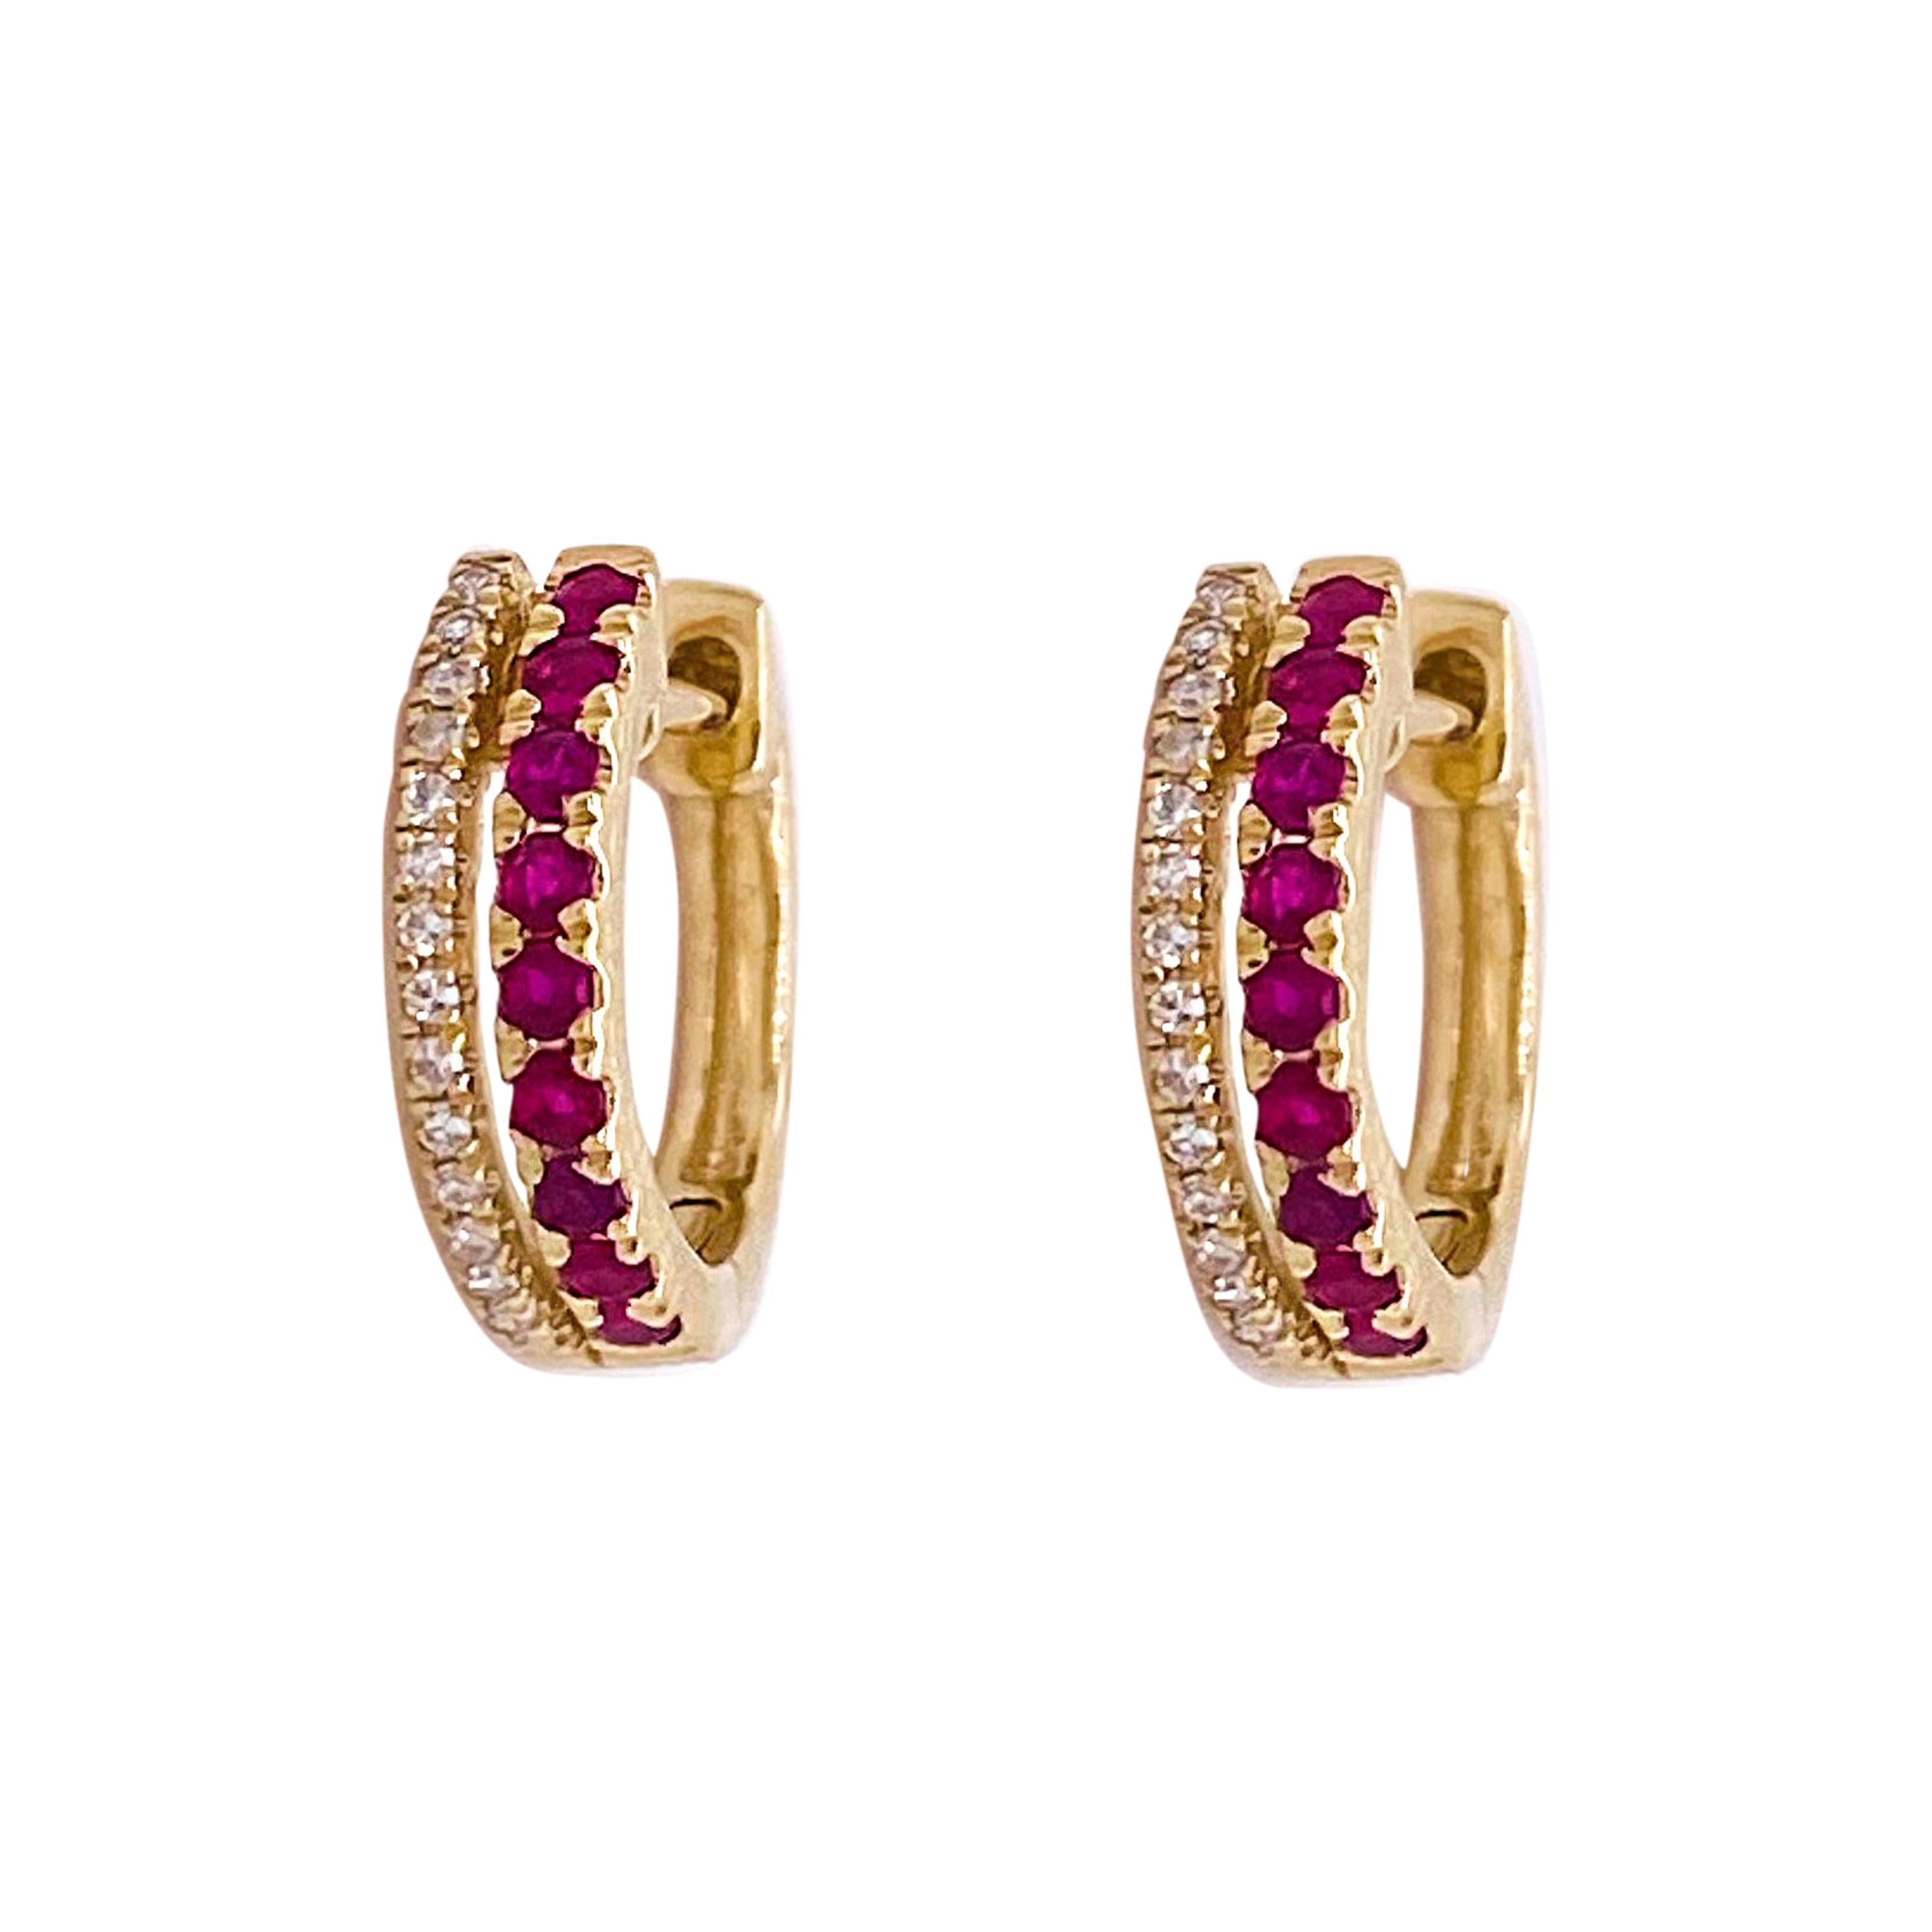 Diamond Ruby Earrings Hoops, 14 Karat Gold Huggies w Rubies and Diamonds Hinge